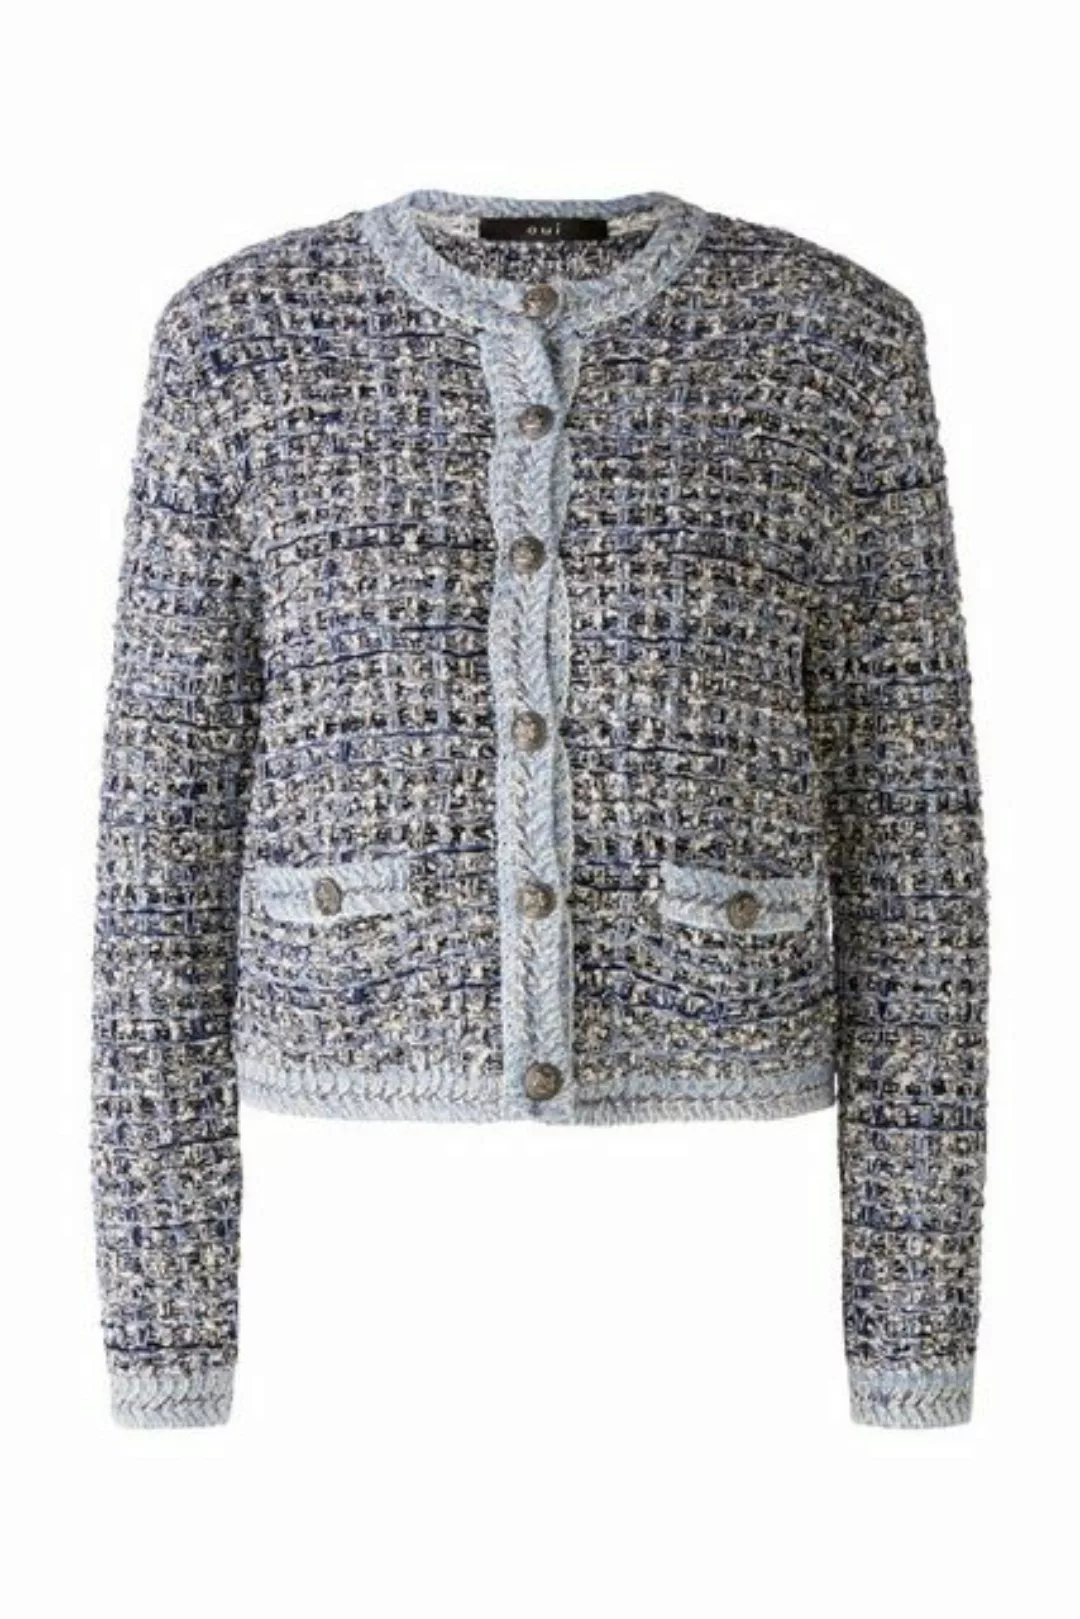 Oui Strickjacke Jacke/Jacket, blue blue günstig online kaufen